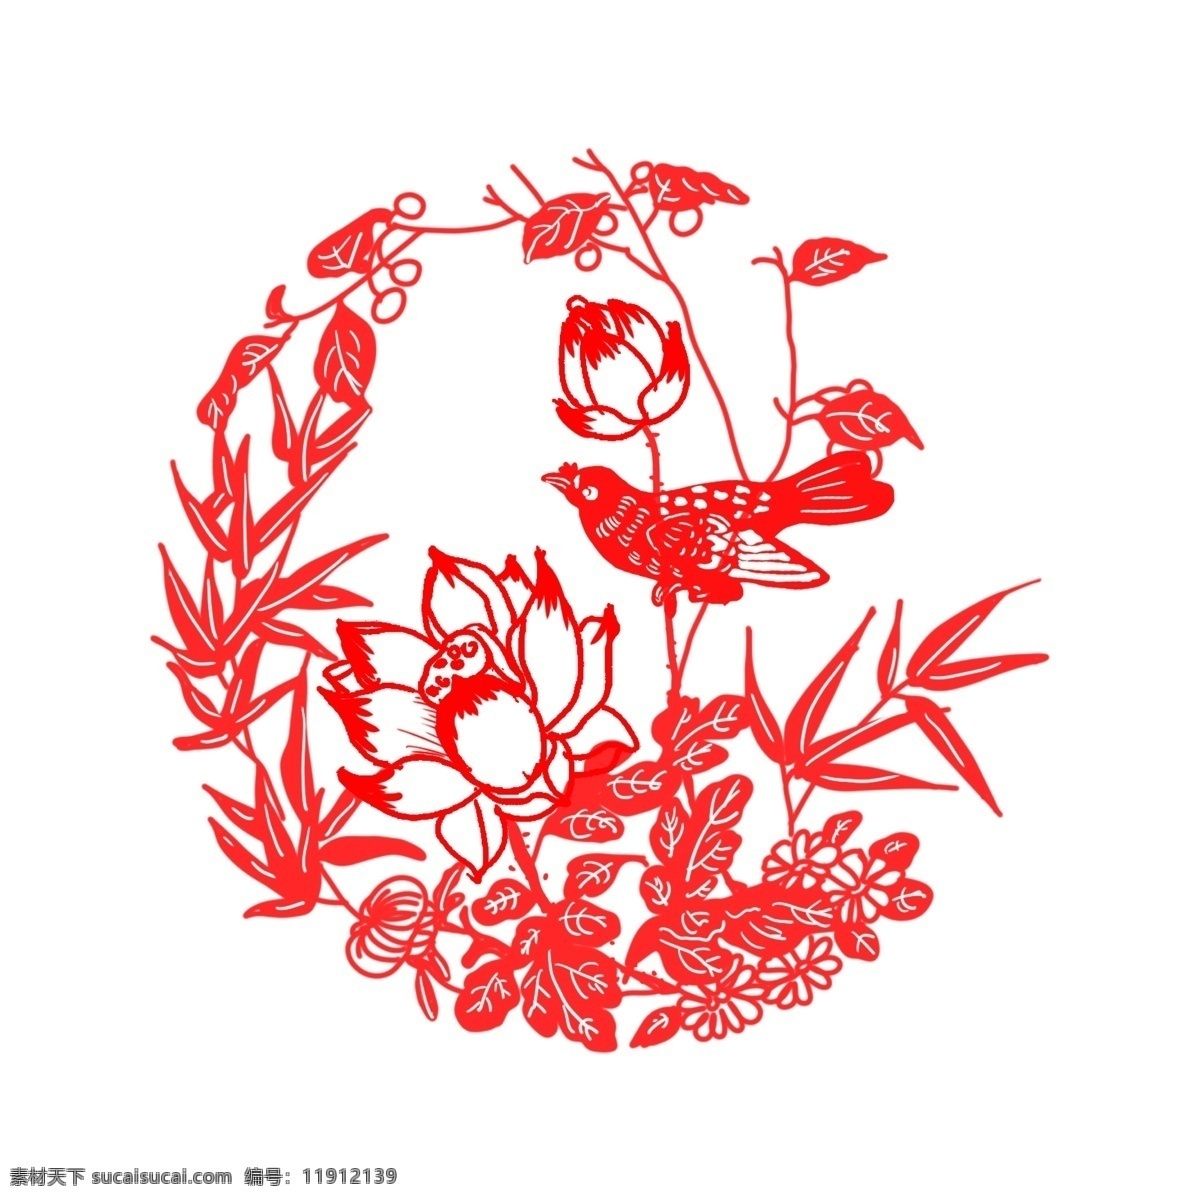 窗花 剪 纸鱼 鸟 字 新年 传统节日 手绘 插画 商用 花 中国风 古风 荷花